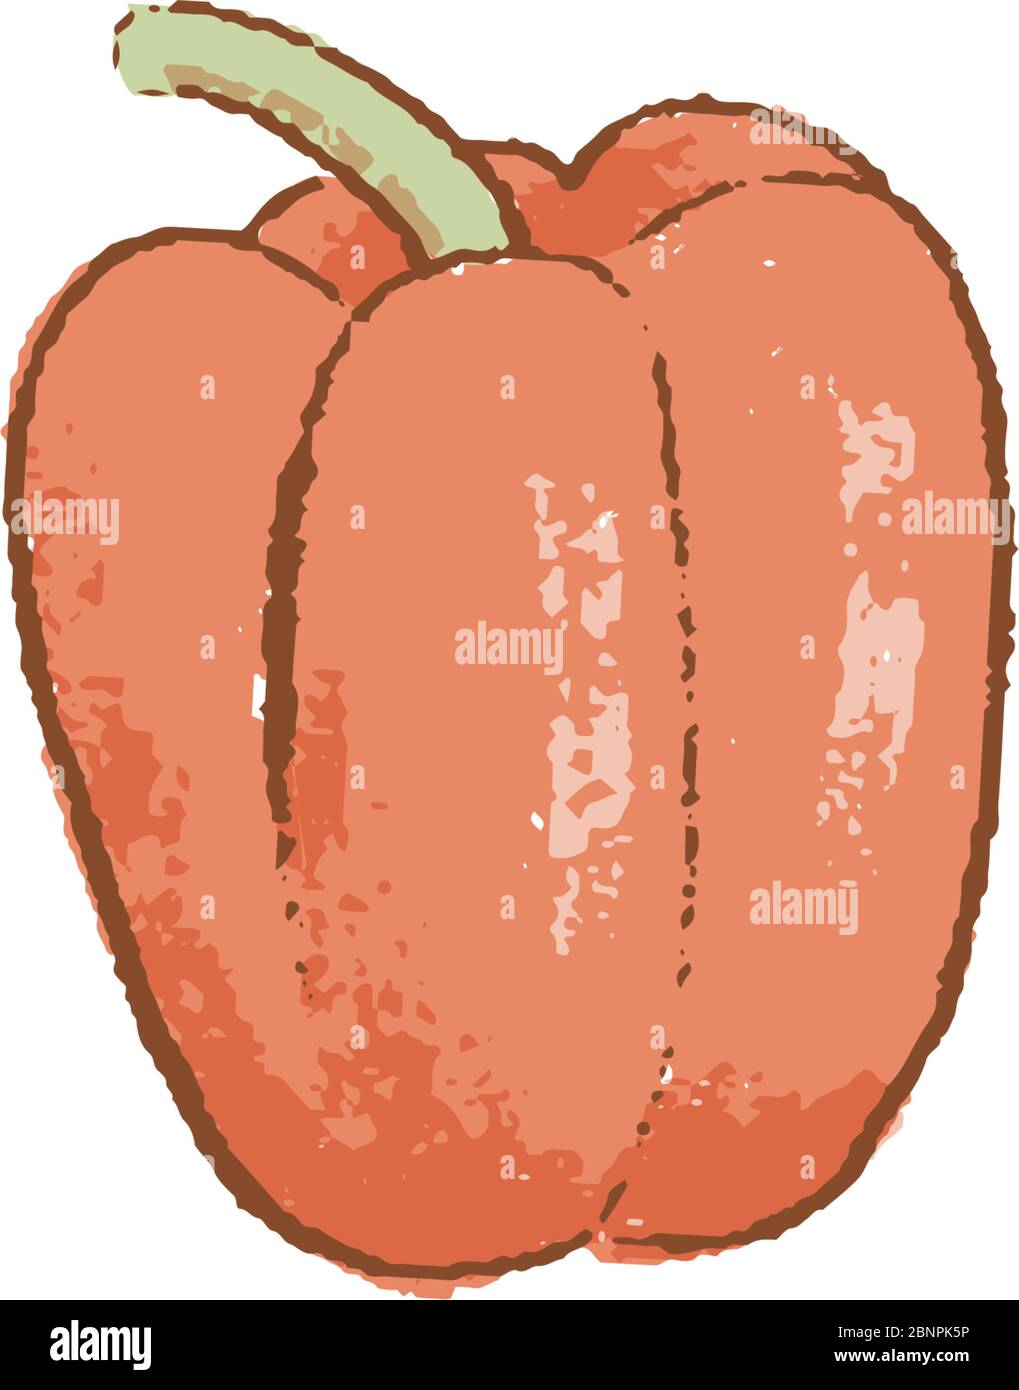 Icona isolata di verdure al peperone rosso fresco. Pepe per il mercato agricolo, disegno di ricette vegetariane per insalata. Illustrazione vettoriale in stile piatto Illustrazione Vettoriale